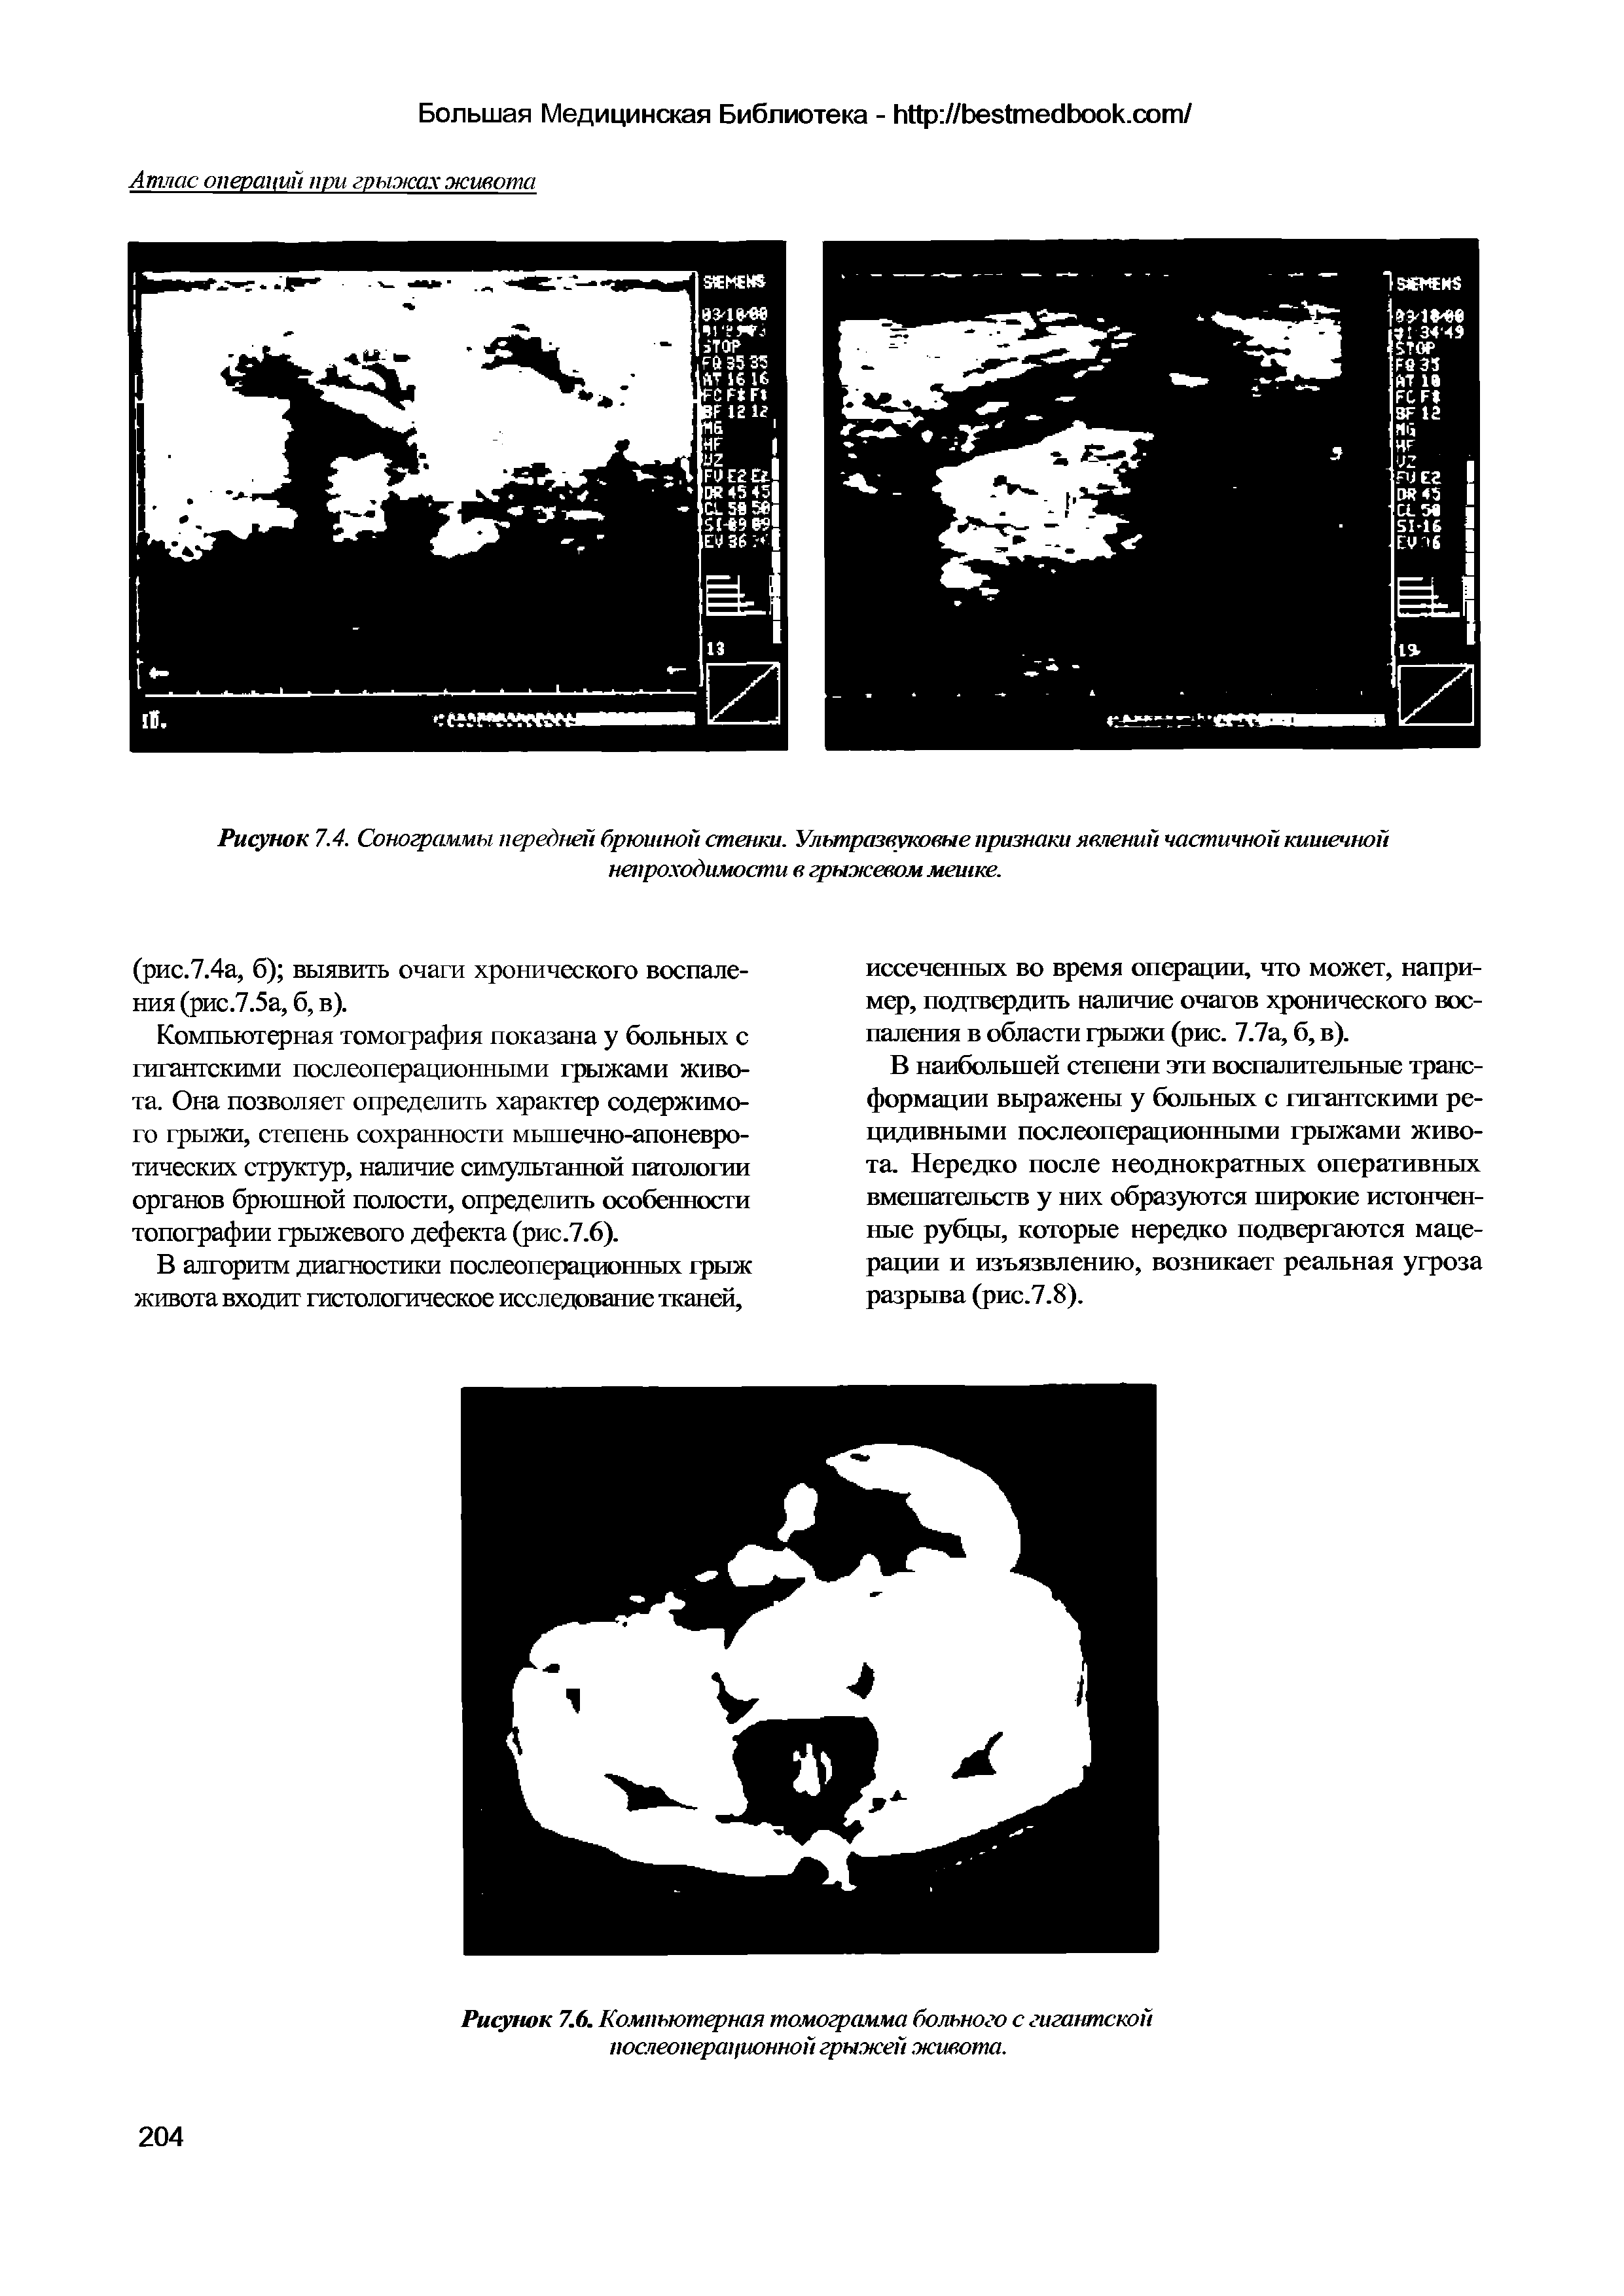 Рисунок 7.6. Компьютерная томограмма больного с гигантской послеоперационной грыжей живота.